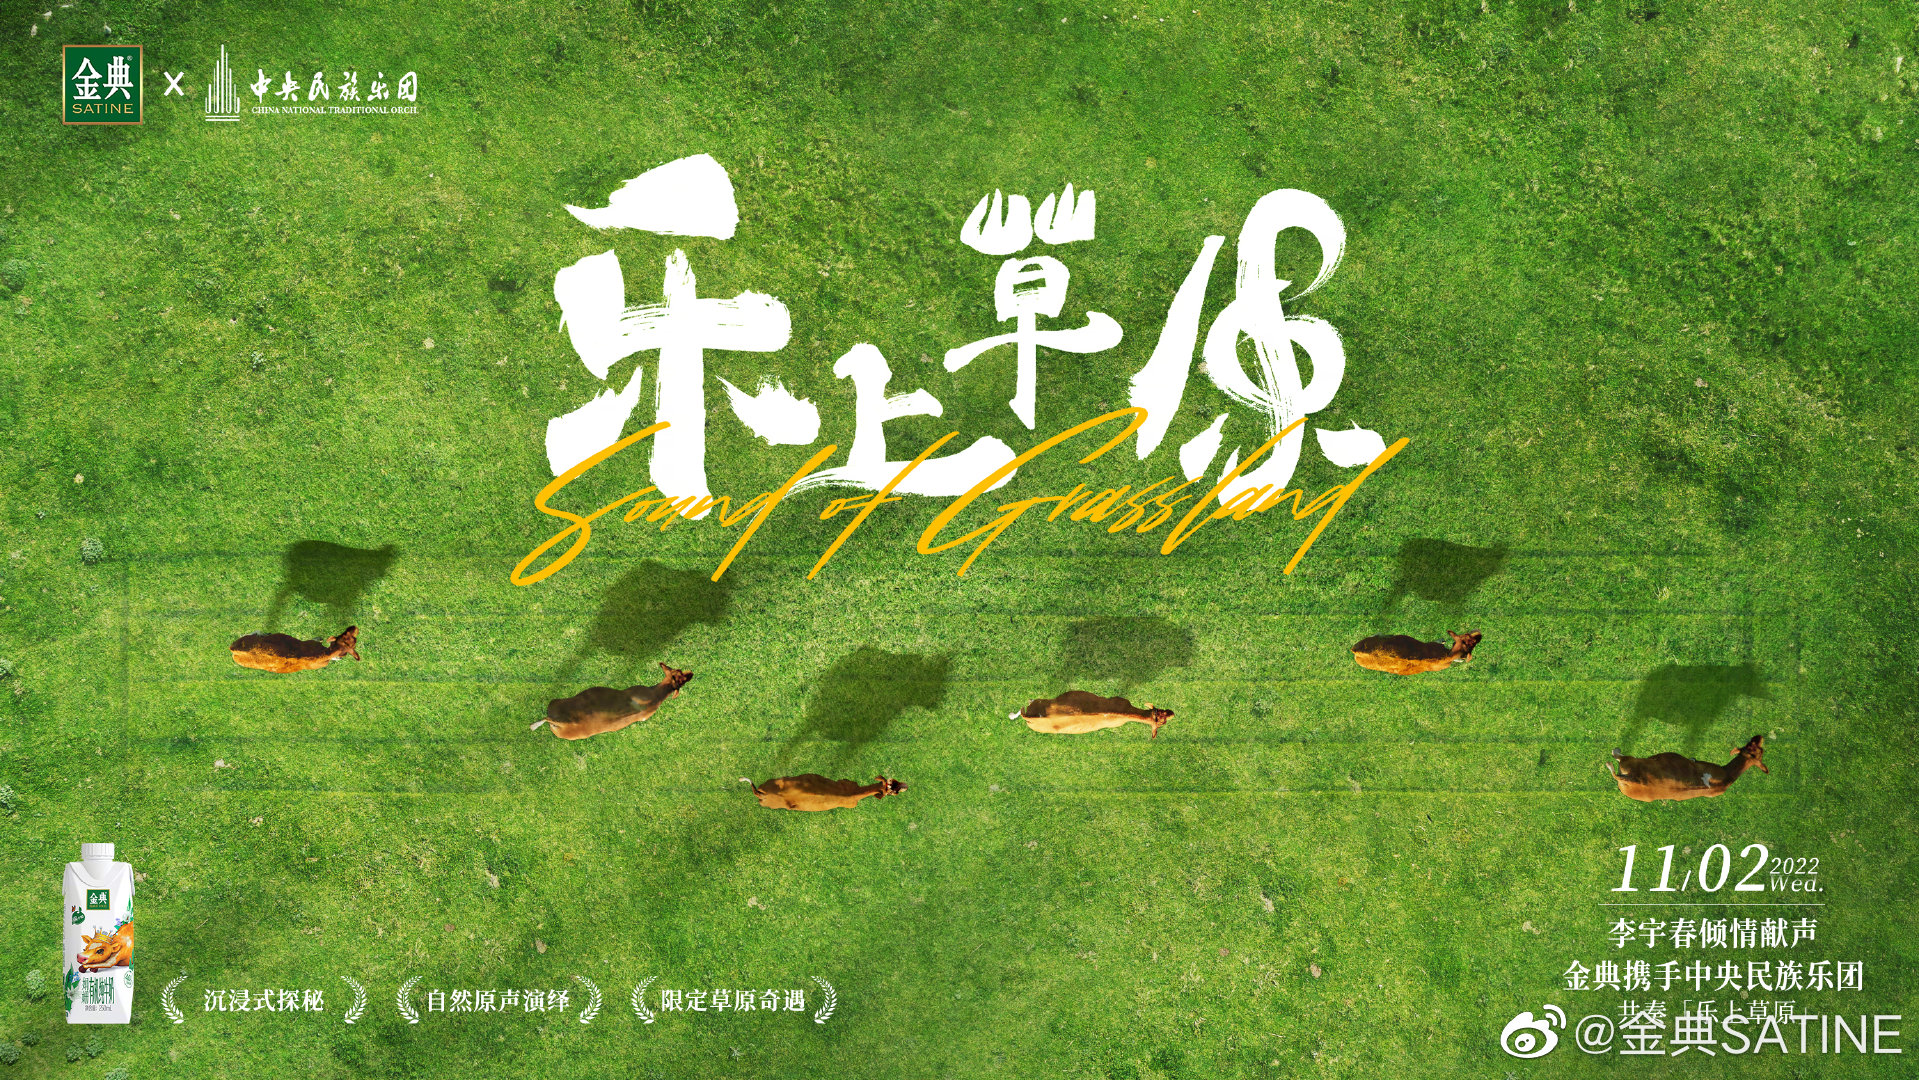 金典 × 中央民族乐团为草原拍了一部音乐纪录片